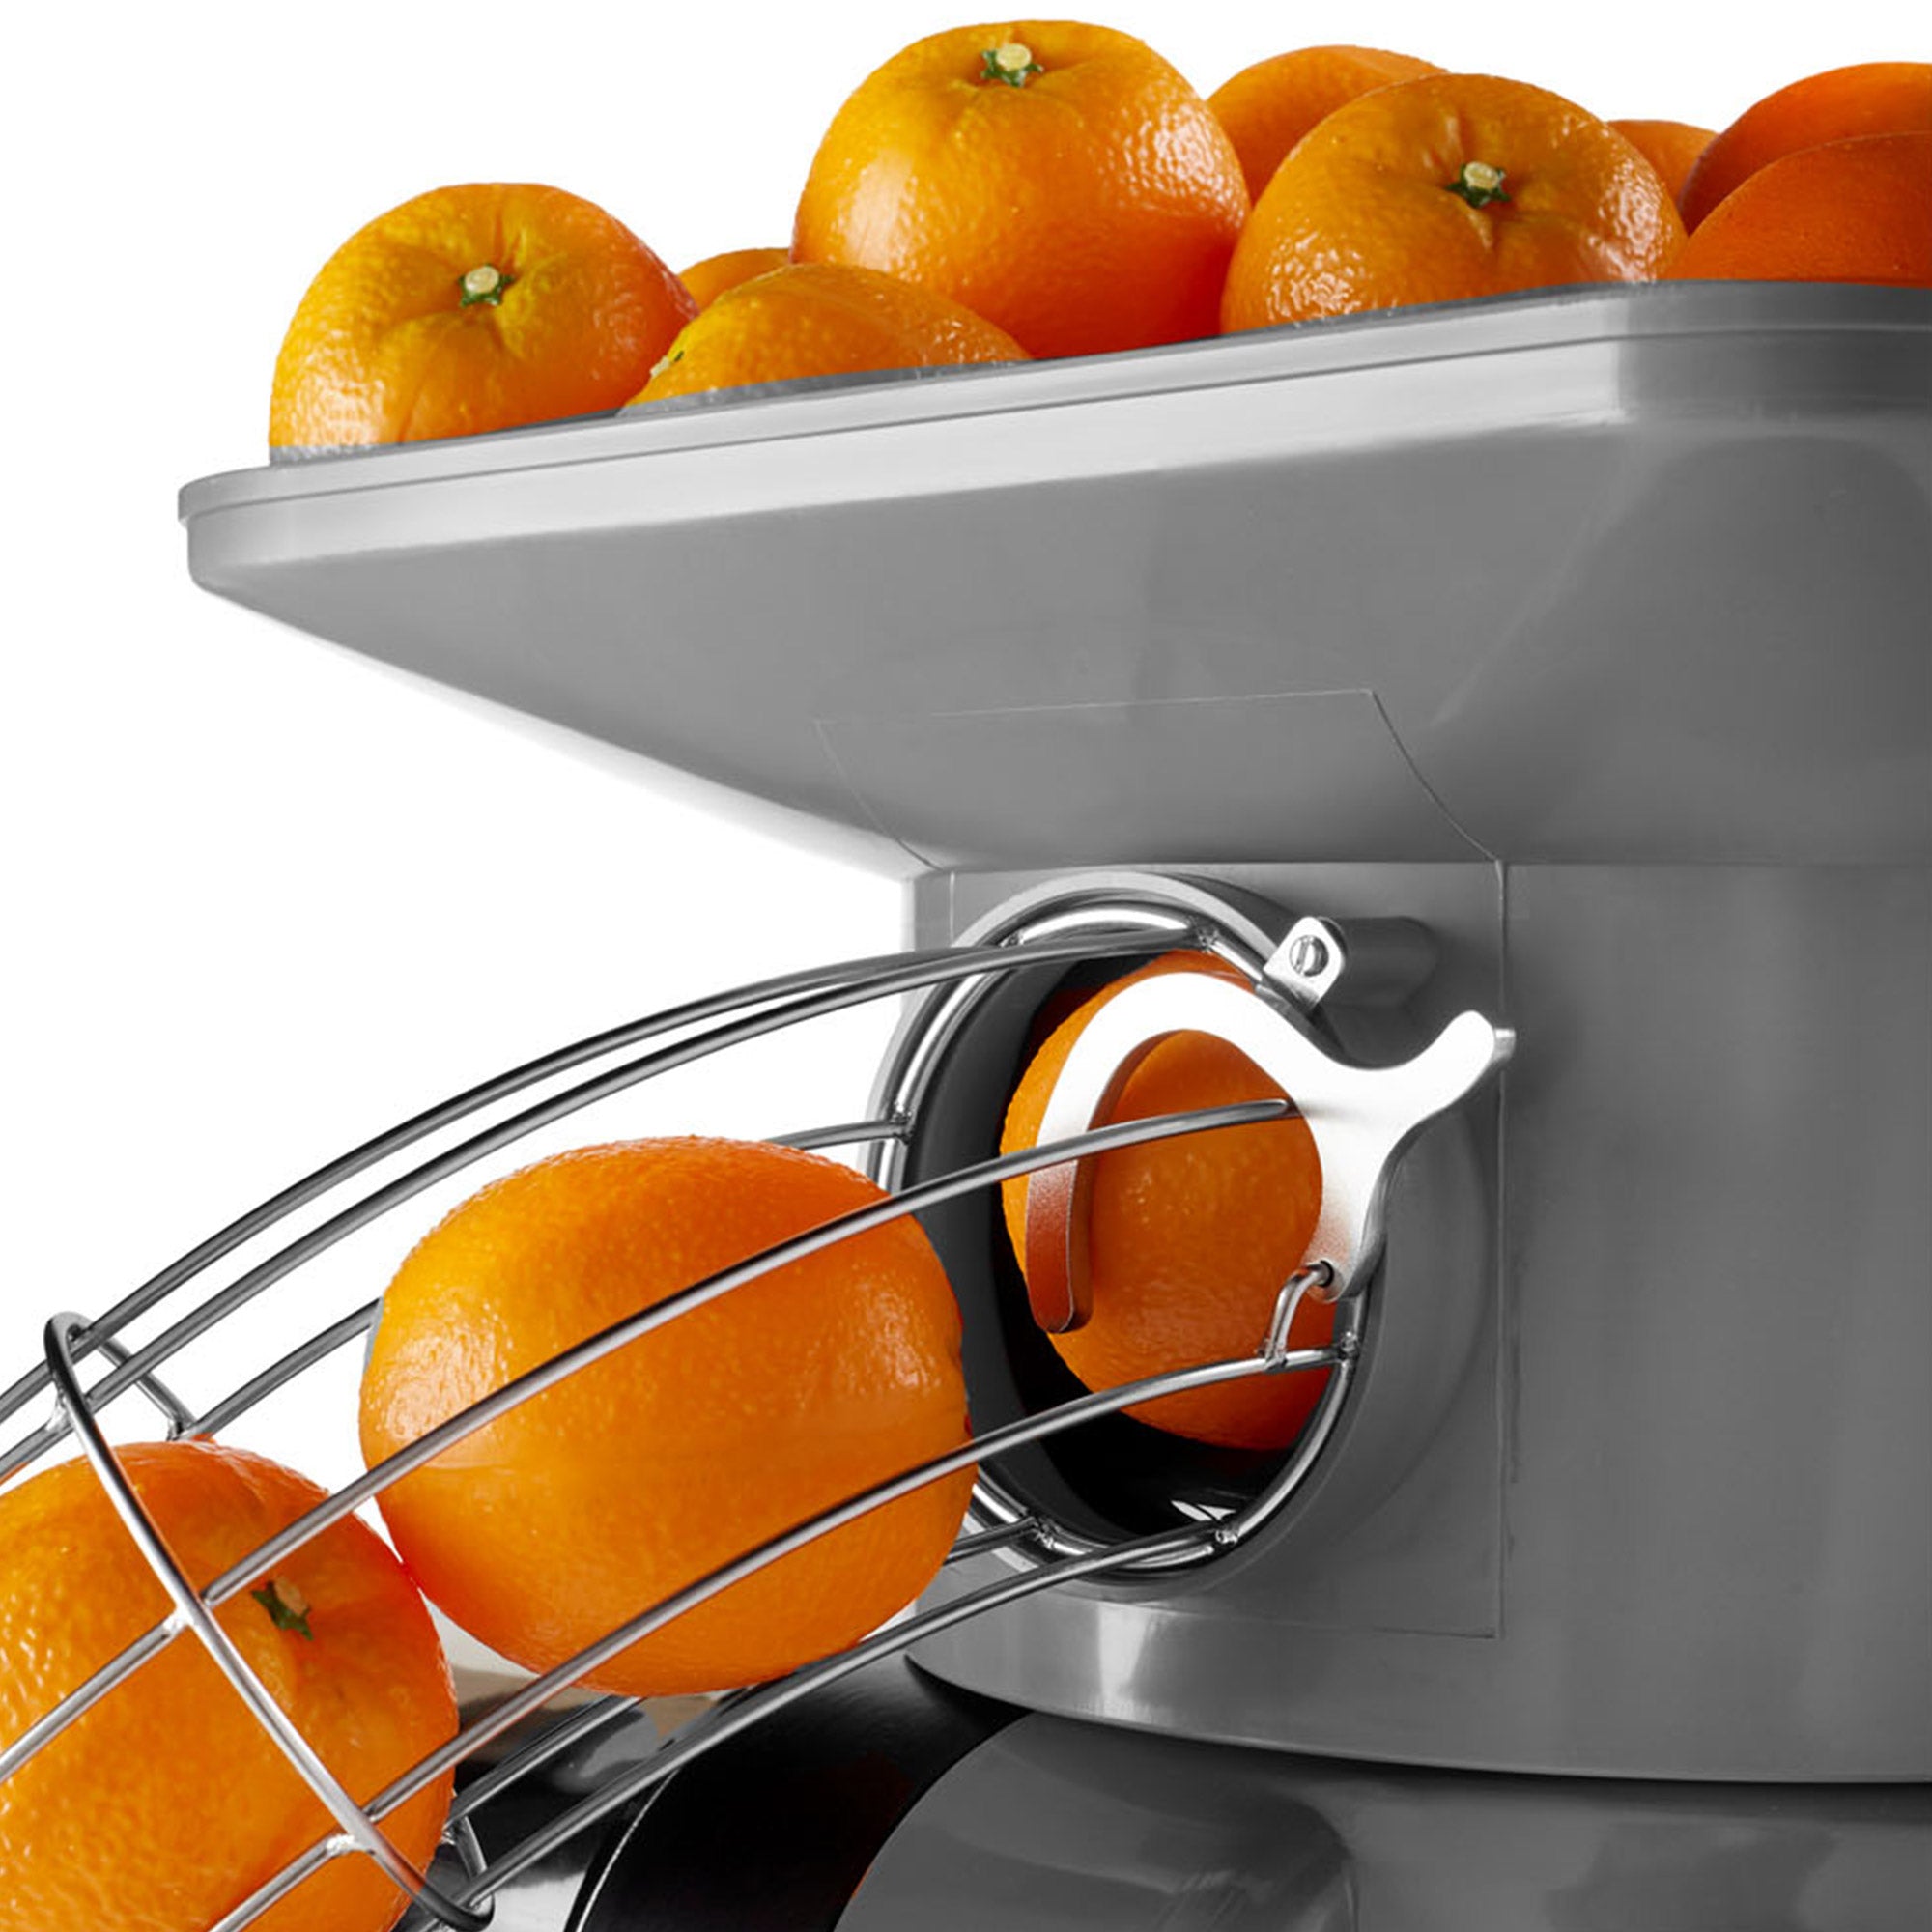 Elektrisk appelsinpresser - sølv - automatisk fremføring - inklusive automatisk rengøringstilstand